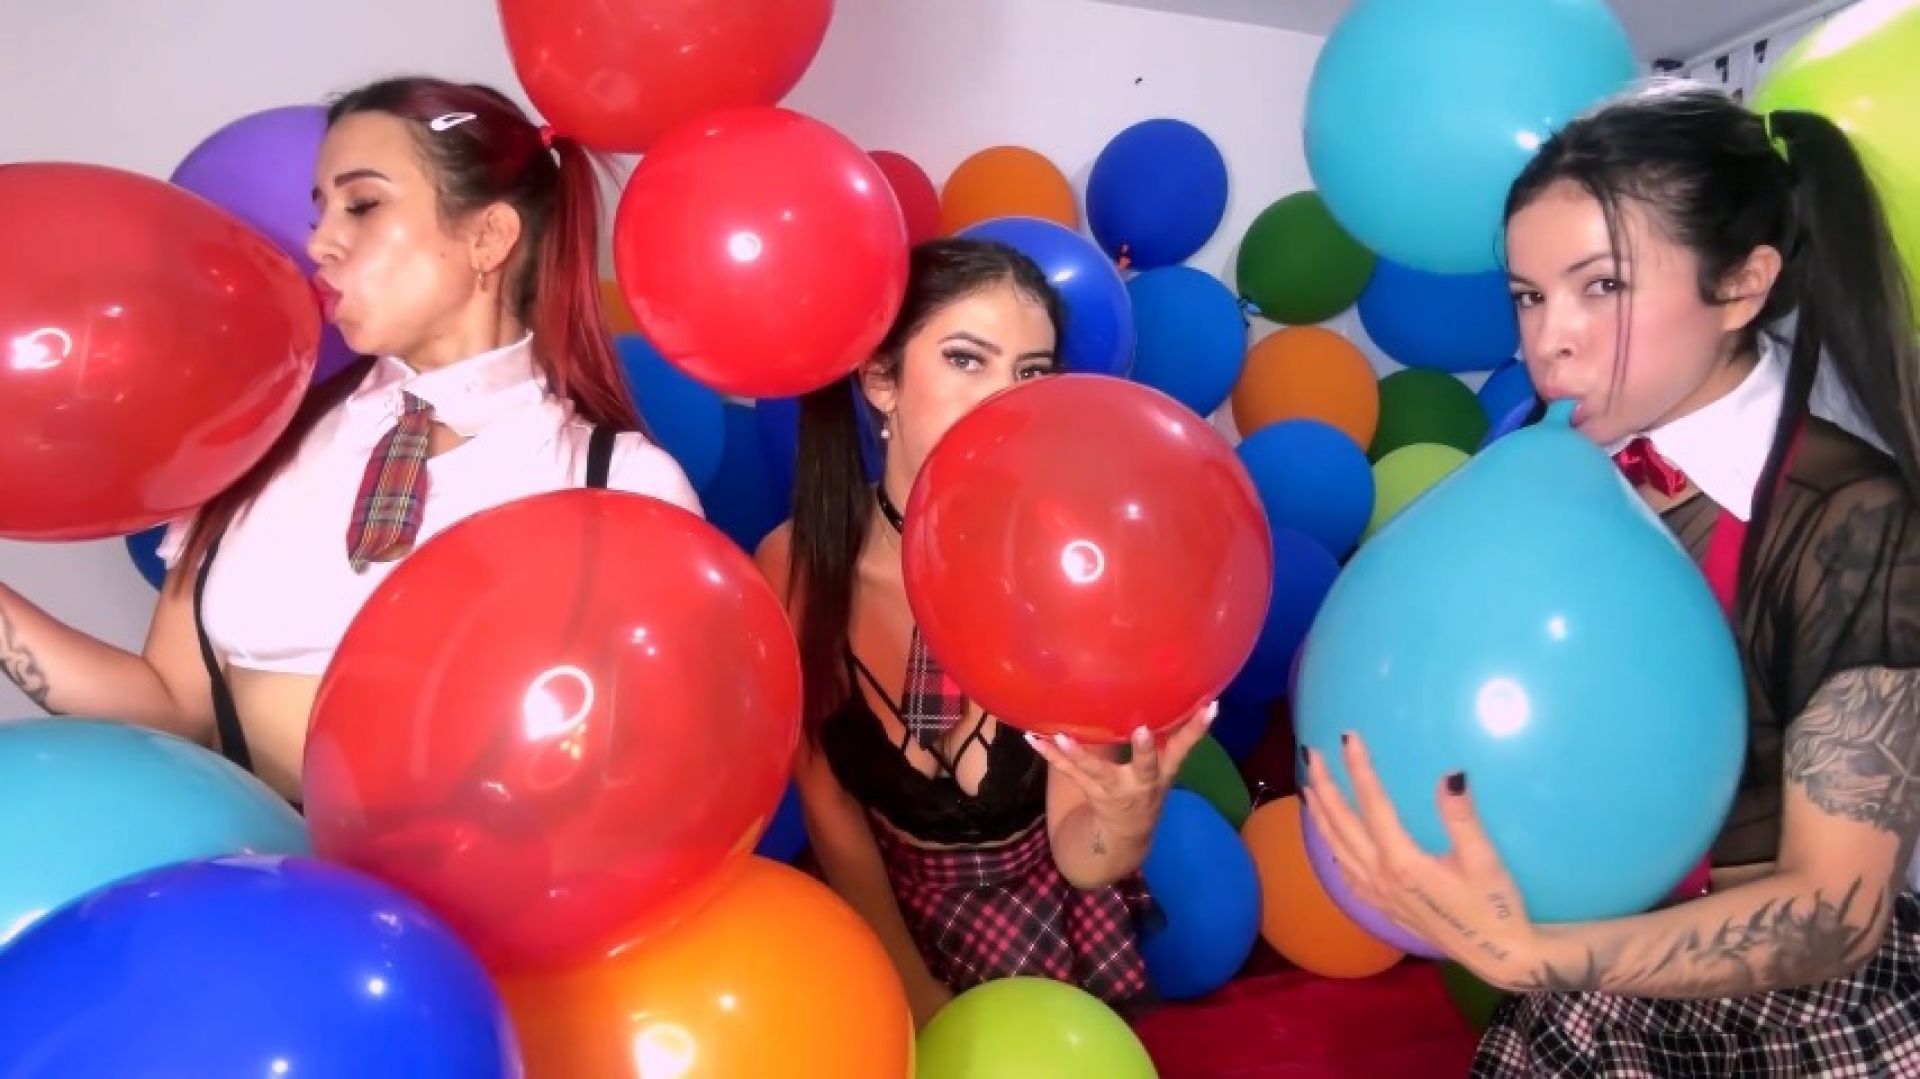 Horny schoolgirls blowing up balloons